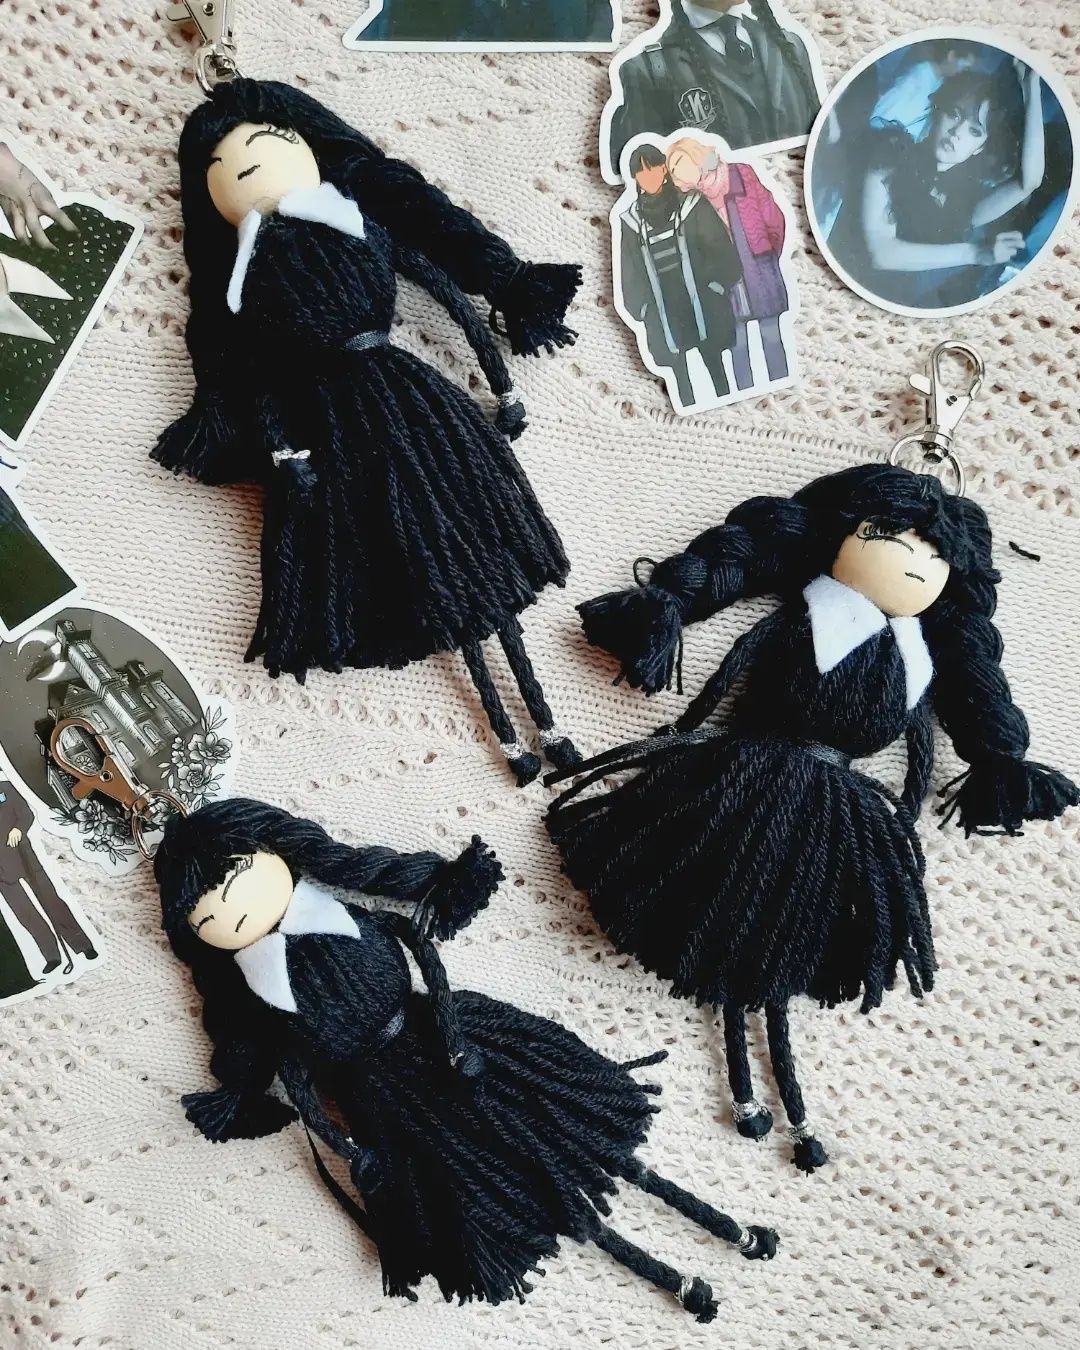 Wednesday Addams Adams breloczek rączka makrama lalka laleczka